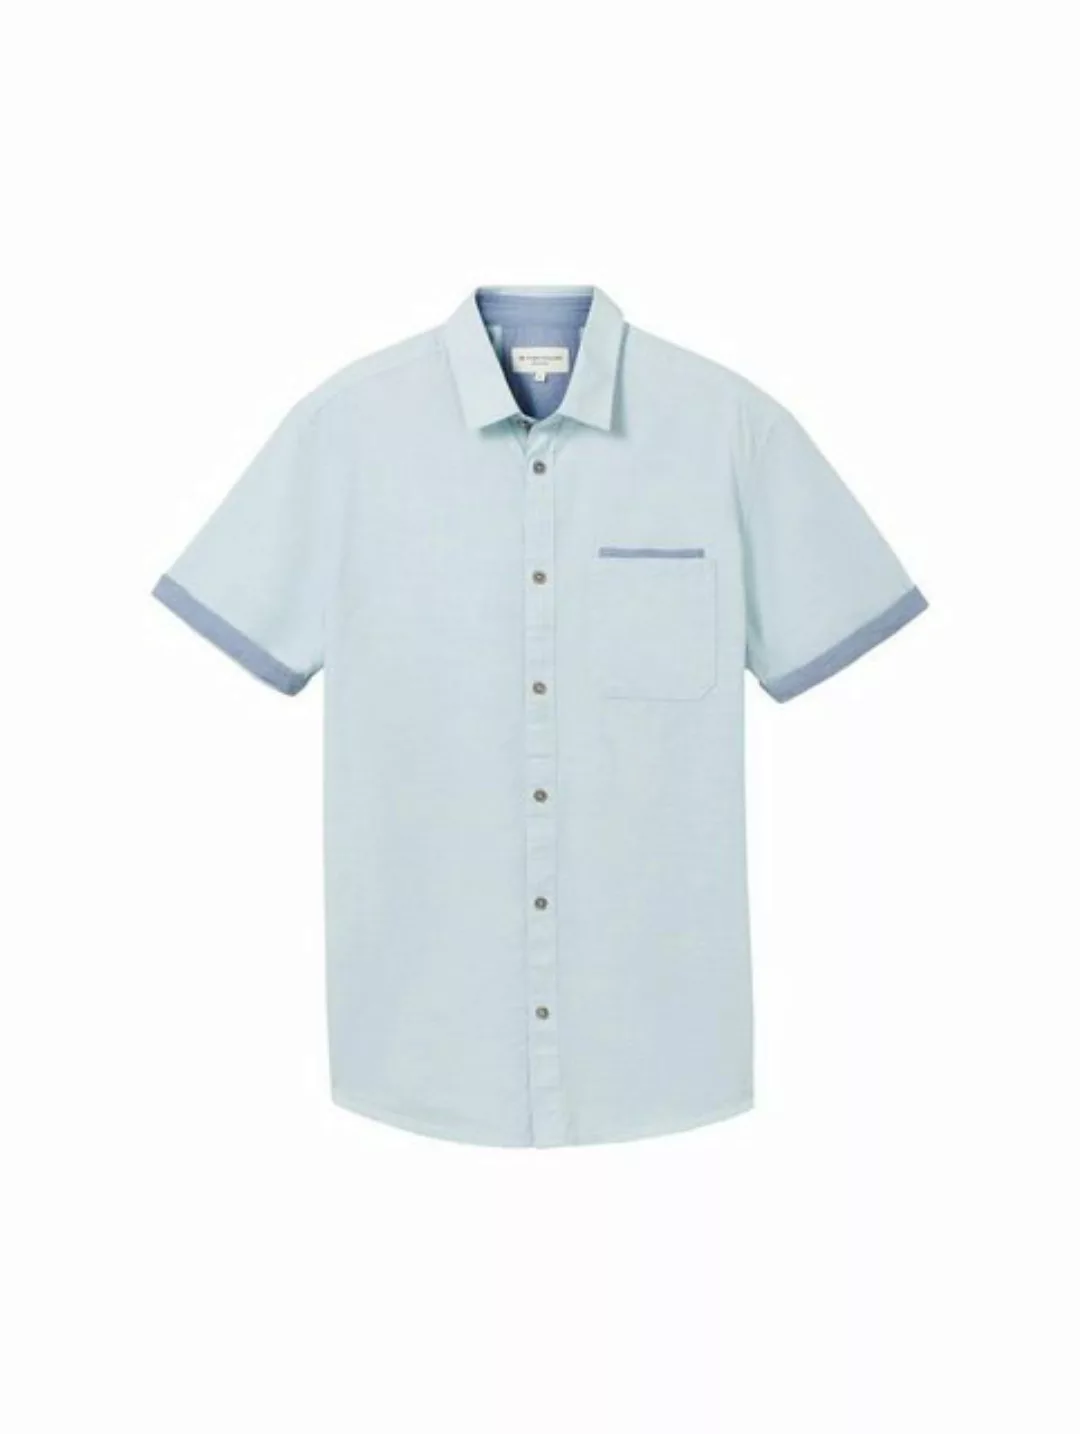 TOM TAILOR T-Shirt structured slubyarn shirt, turquoise small structure günstig online kaufen